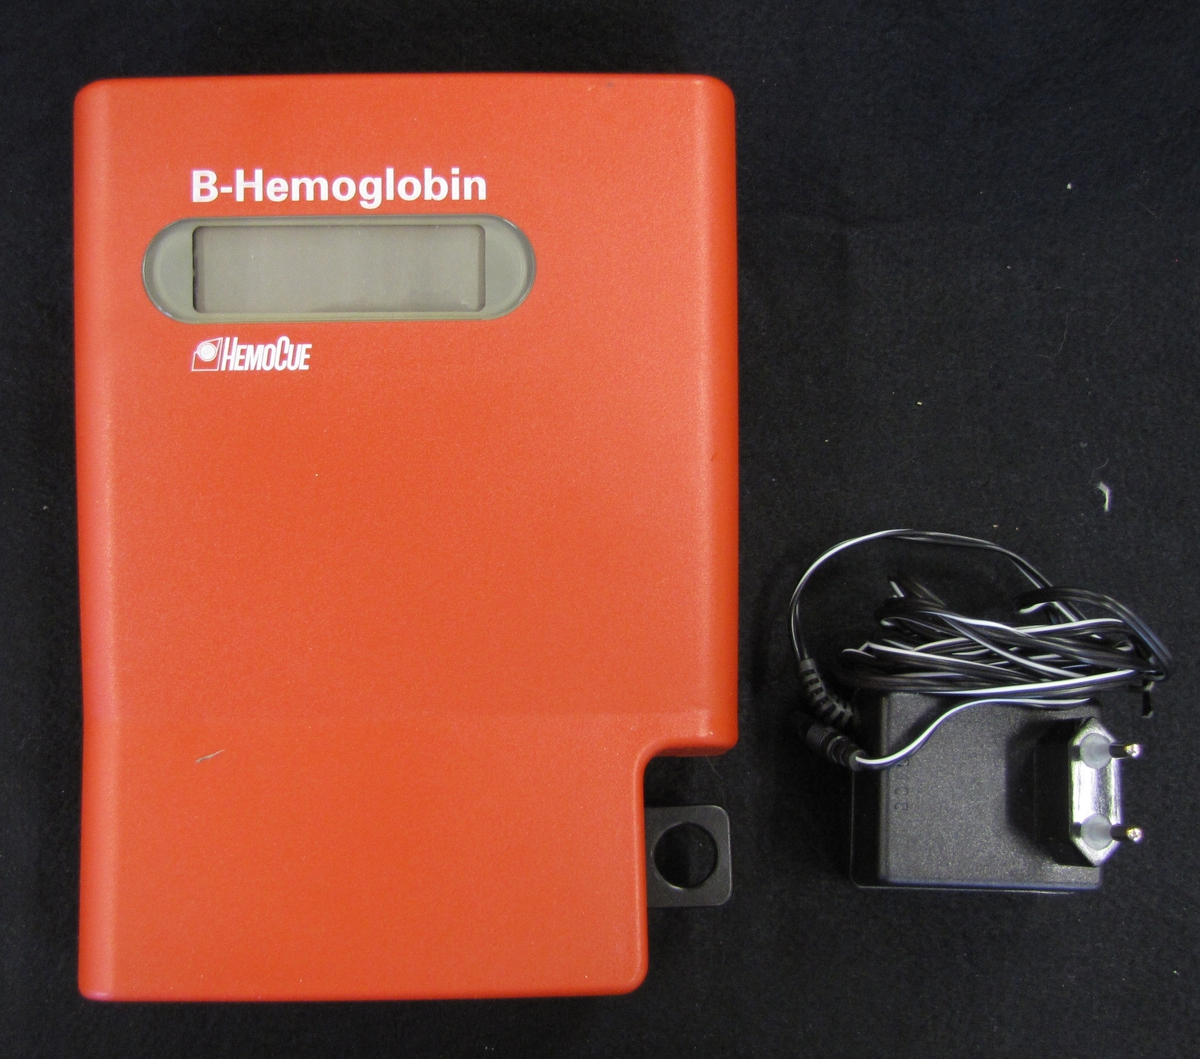 Apparat för mätning av hemoglobin. Apparaten är röd och försedd med en digital panel. Till föremålet finns tillbehör som en fotometer för kalibrering av hb-mätaren samt en behållare med fotometrar för provtagning för att avläsa blodets hb.

Föremålet ingår i en samling med föremål som använt av skolsköterskorna i Vänersborg genom åren.